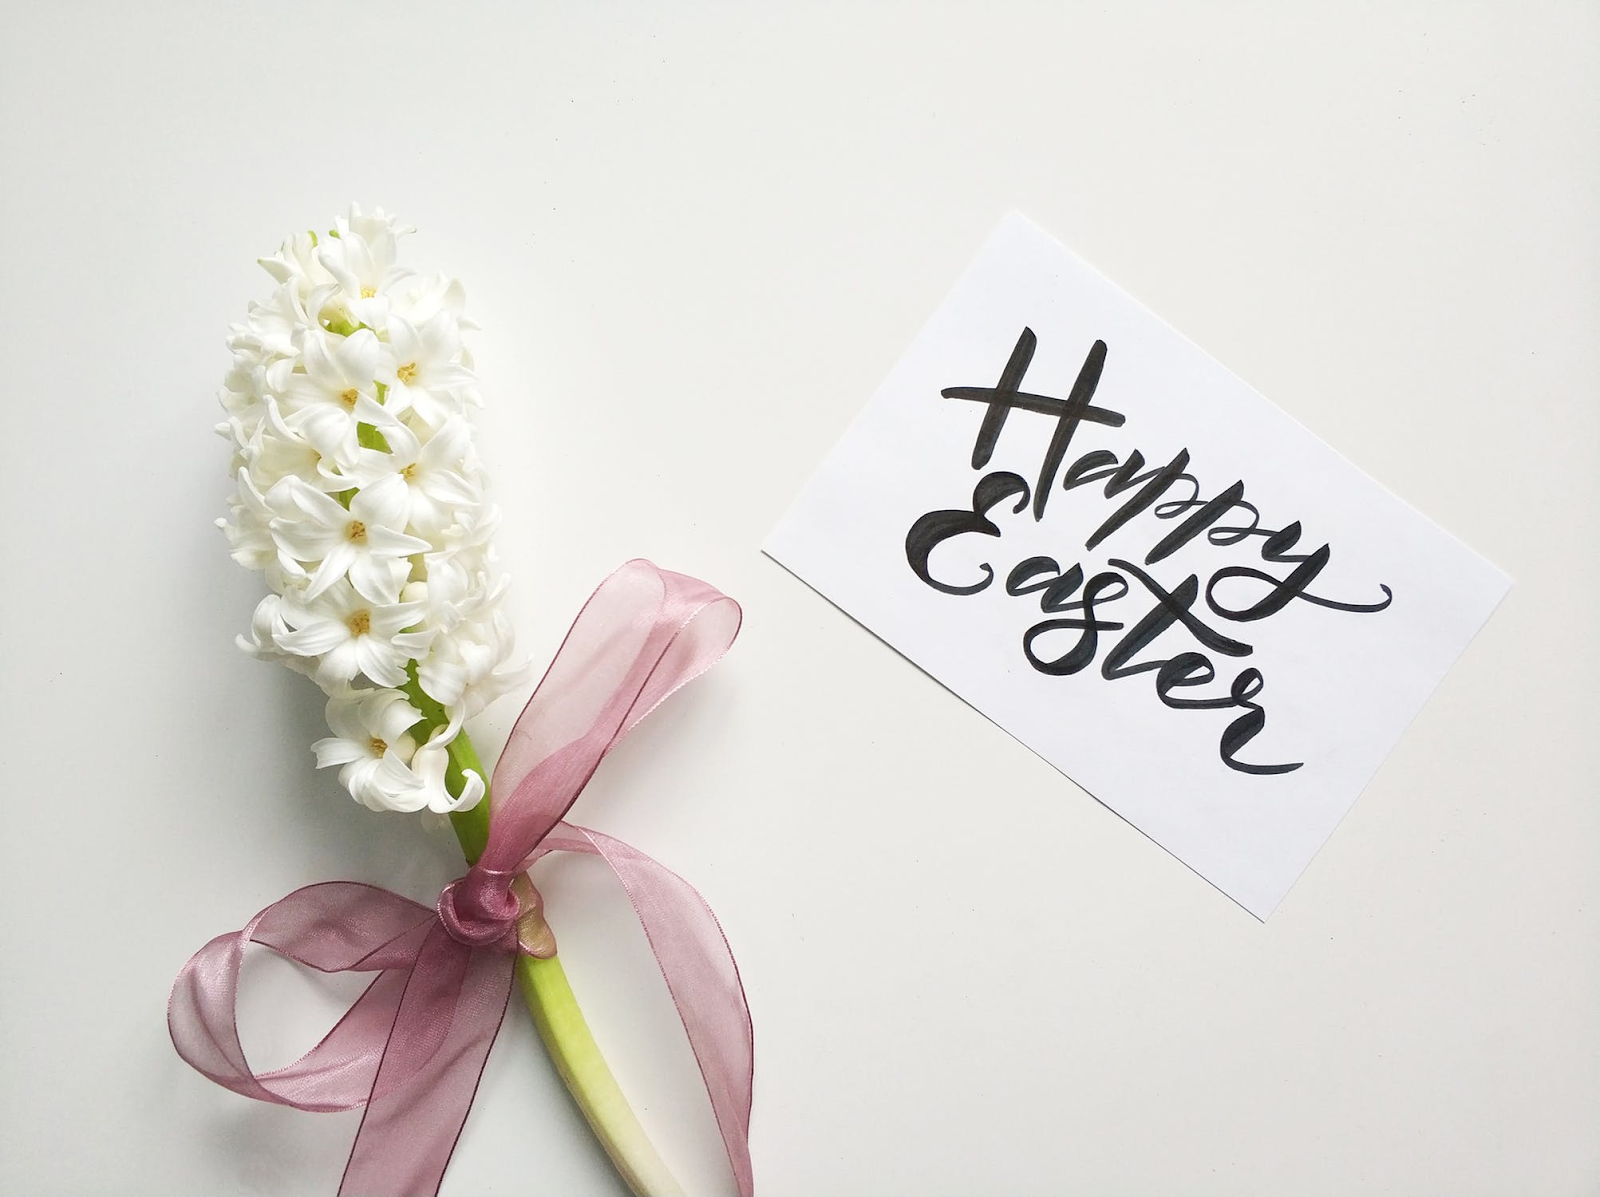 Happy Easter! Happy Spring!, ecard